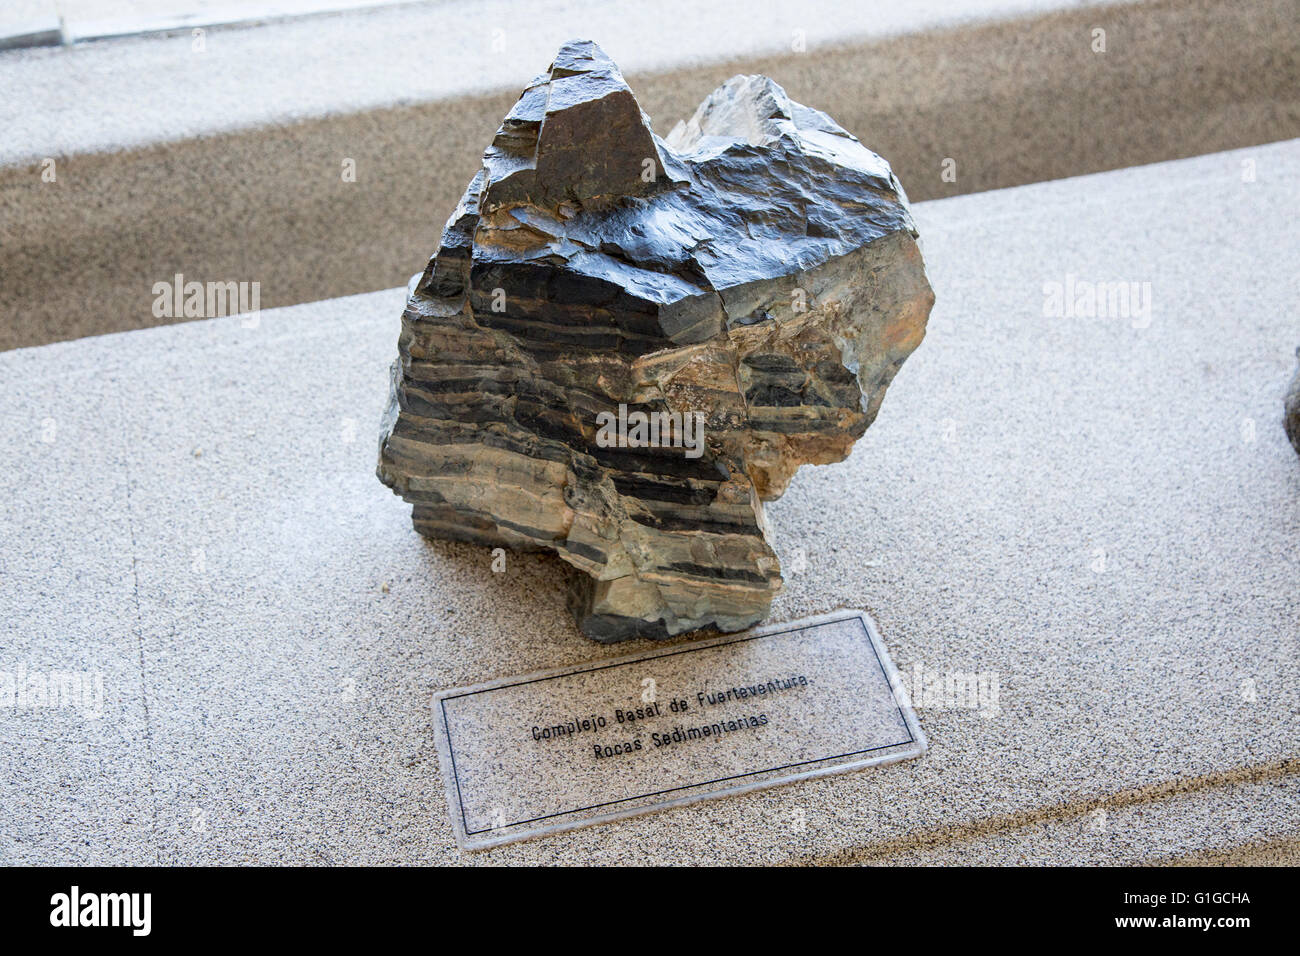 Échantillon de roche sédimentaire basale complexe de Fuerteventura, géologie afficher Casa de los Volcanes, centre volcanique de Lanzarote, Espagne Banque D'Images